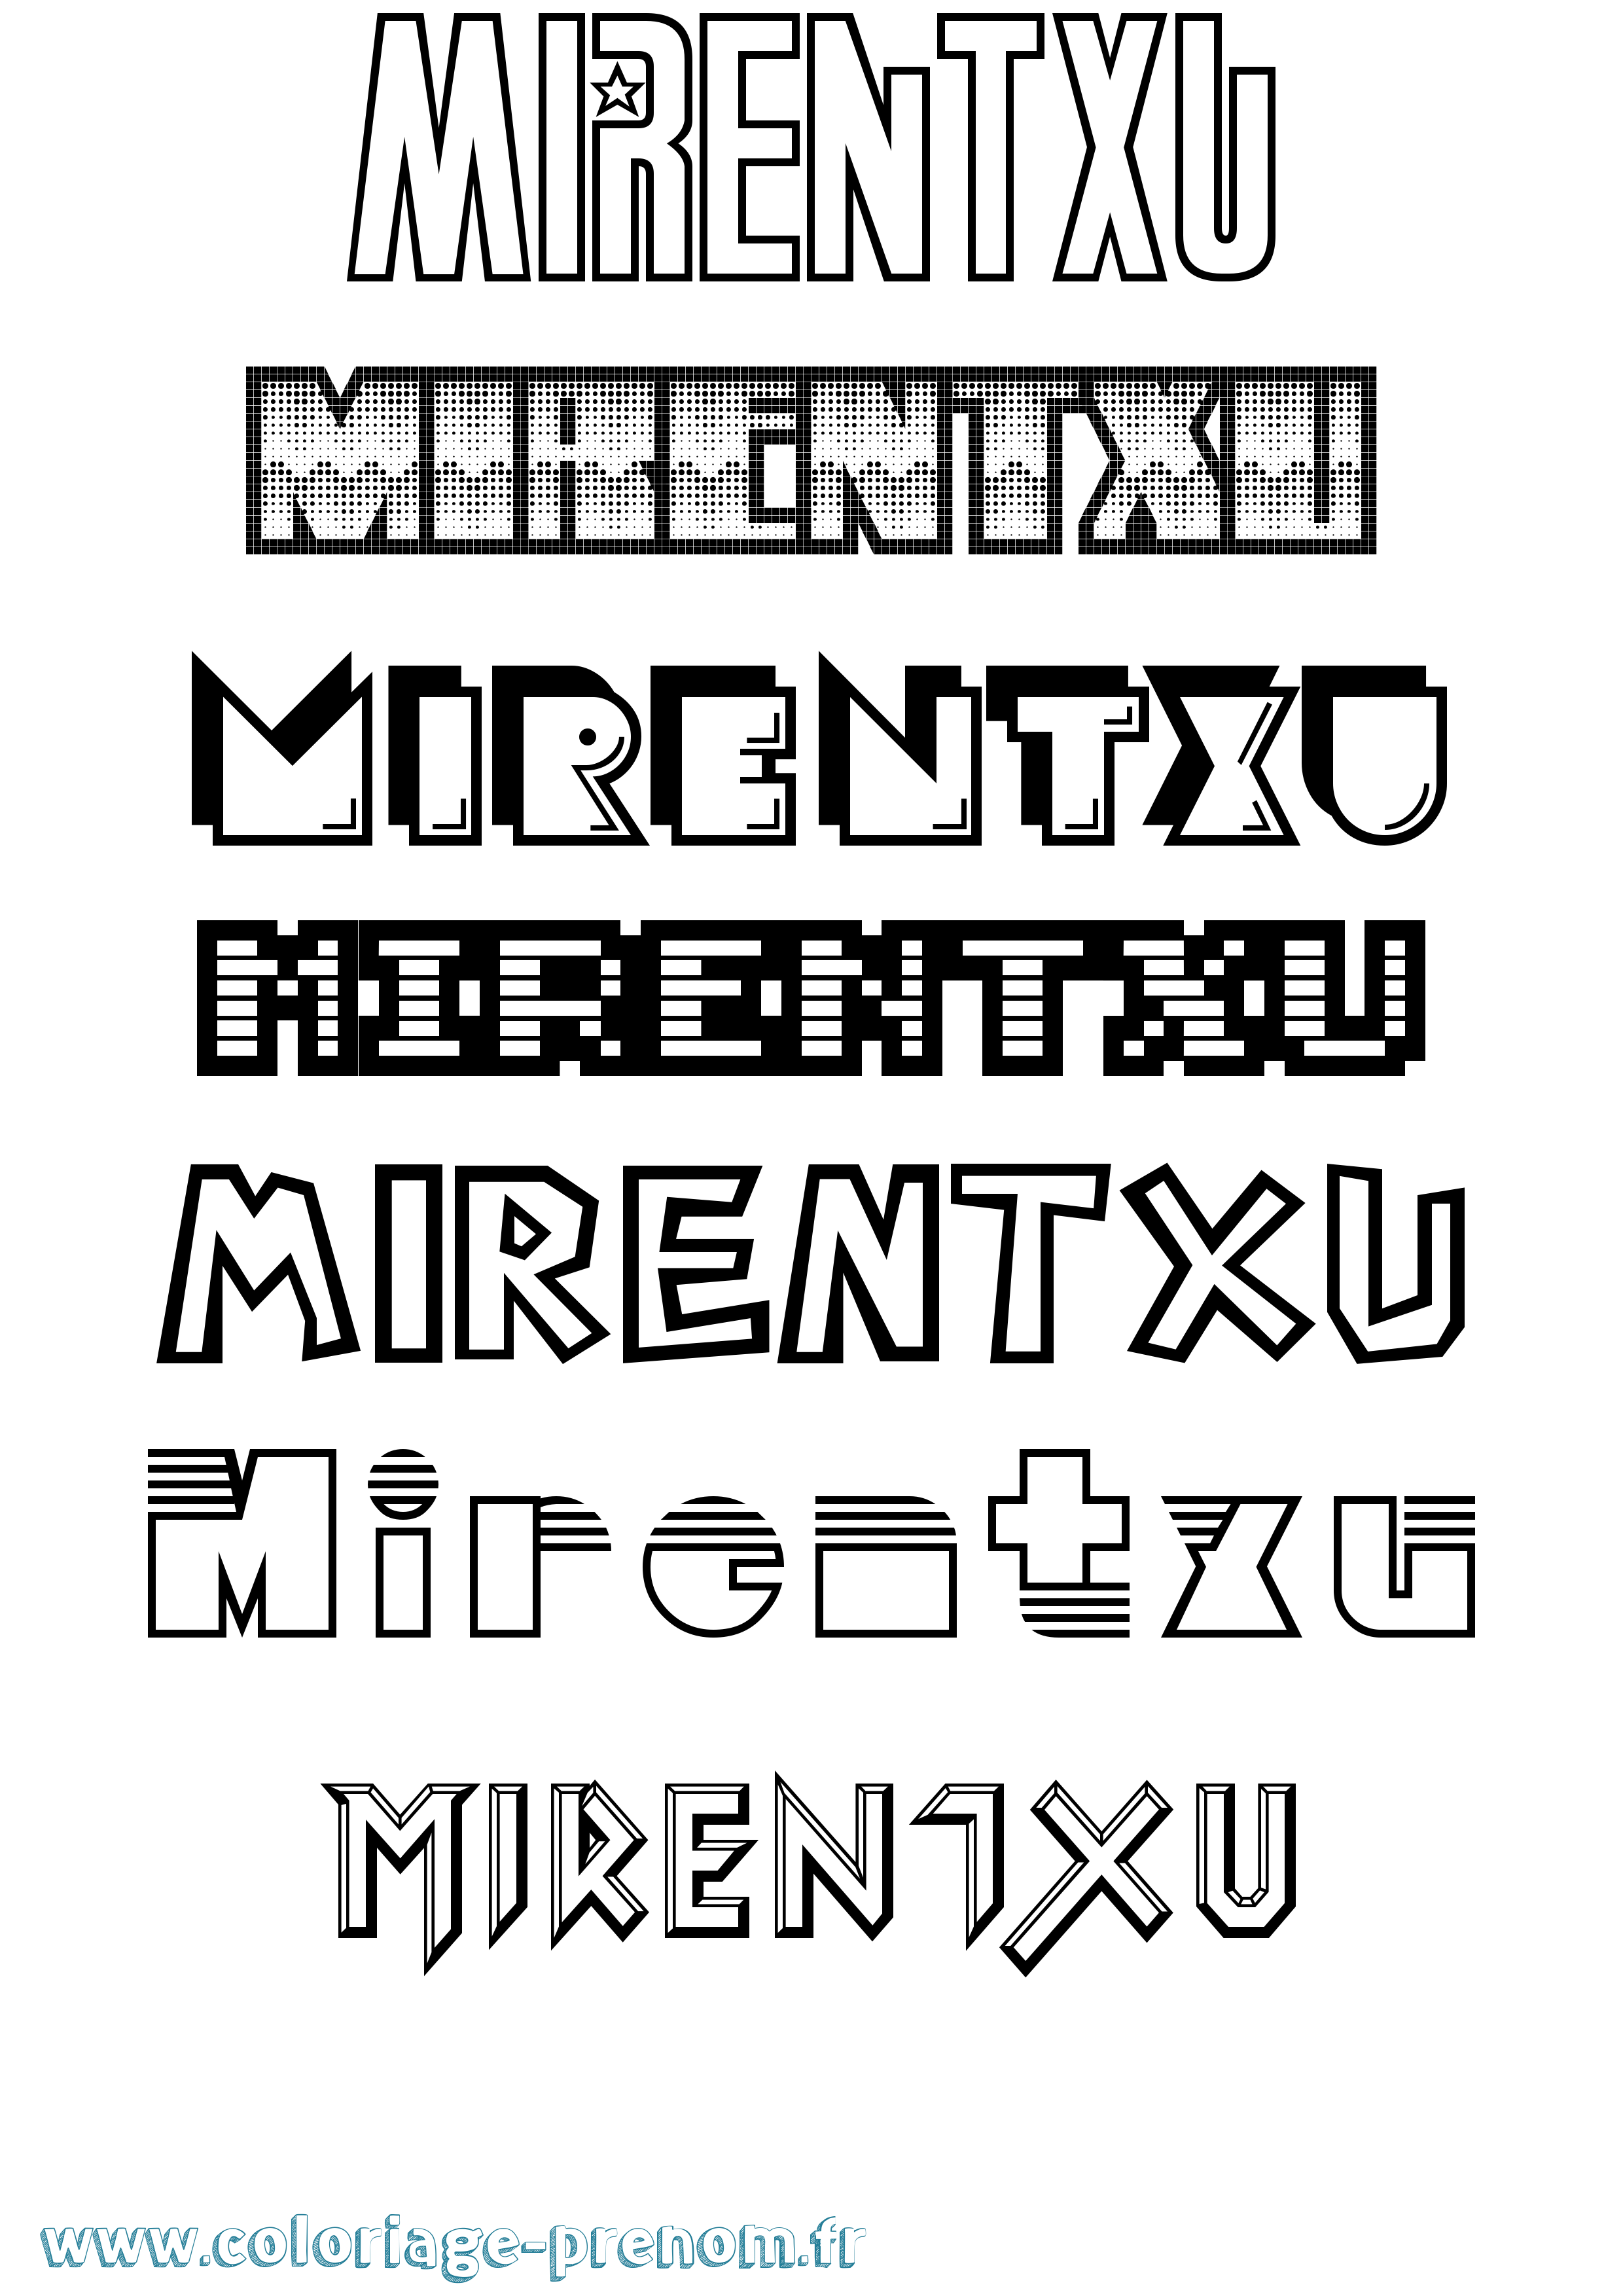 Coloriage prénom Mirentxu Jeux Vidéos